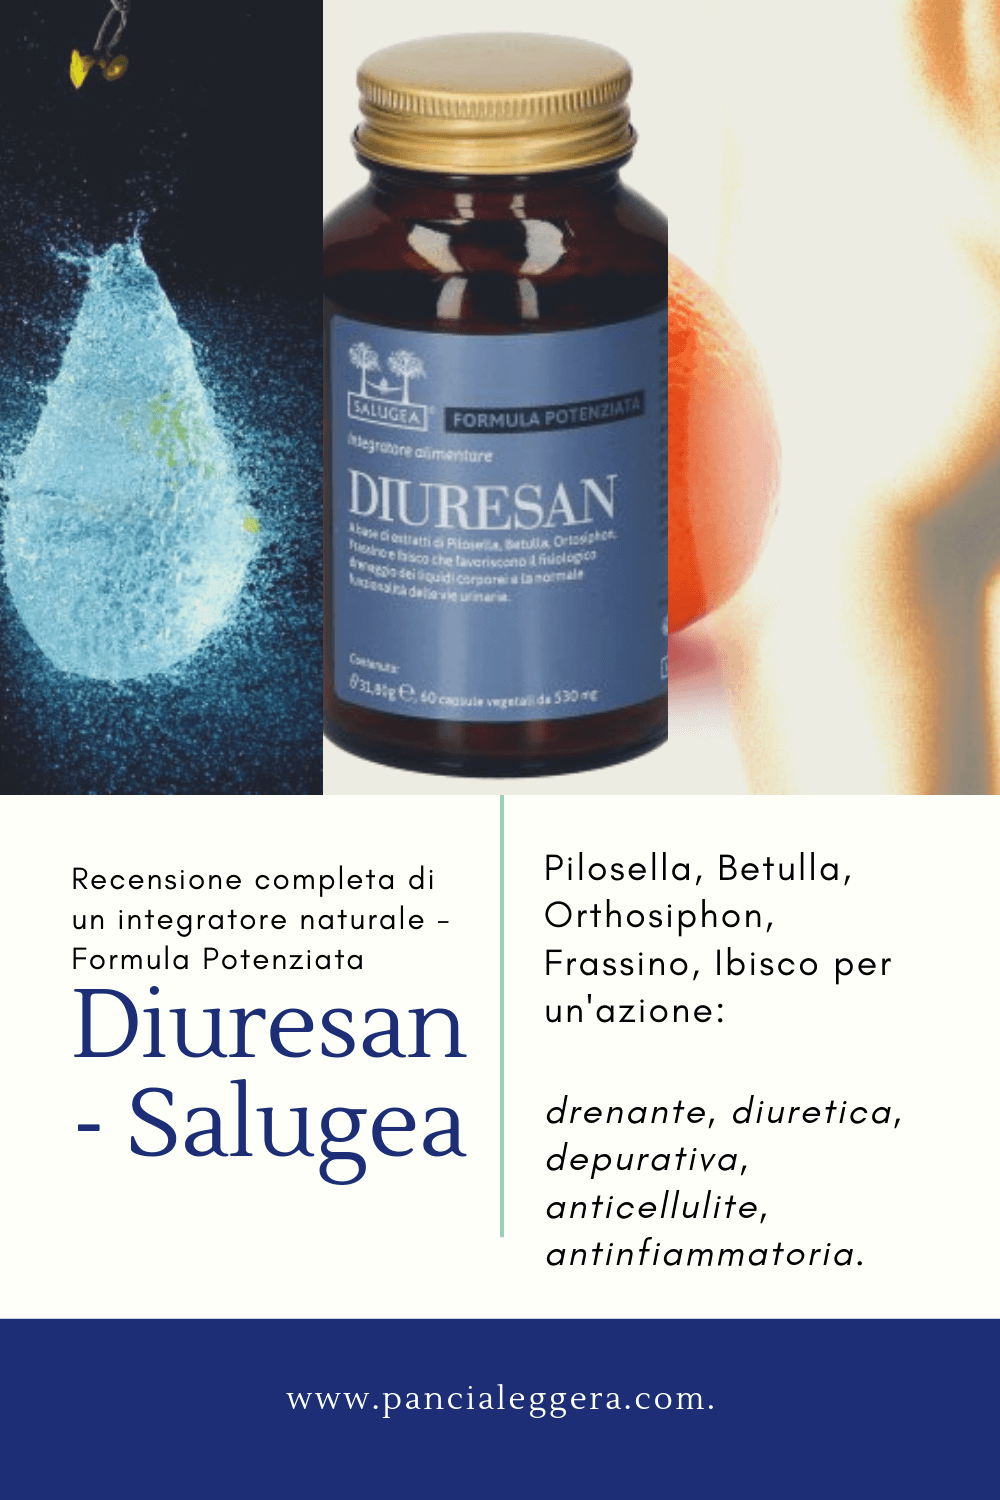 La Formula Potenziata di Diuresan Salugea – integratore naturale diuretico e drenante